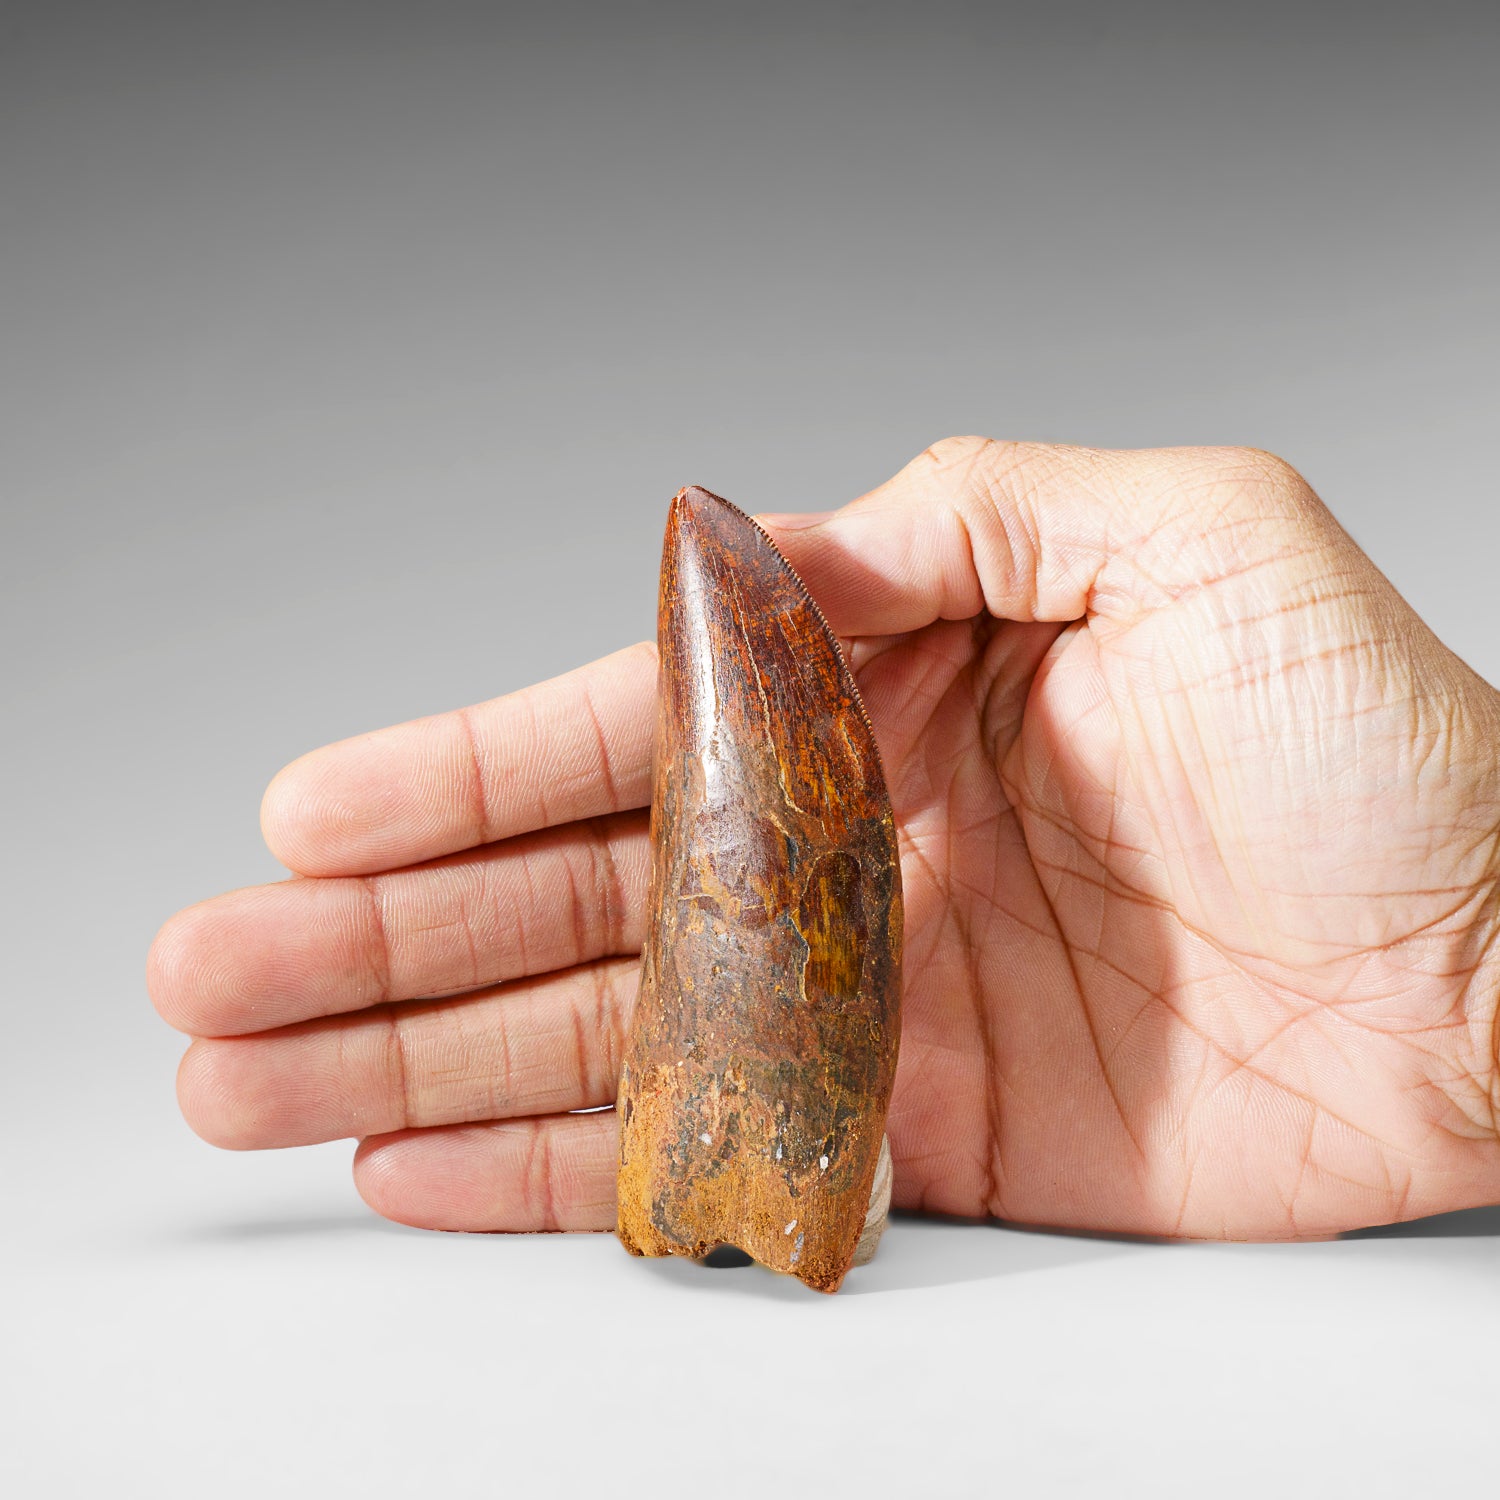 Genuine Natural Carcharodontosaurus Dinosaur Tooth (74 grams)